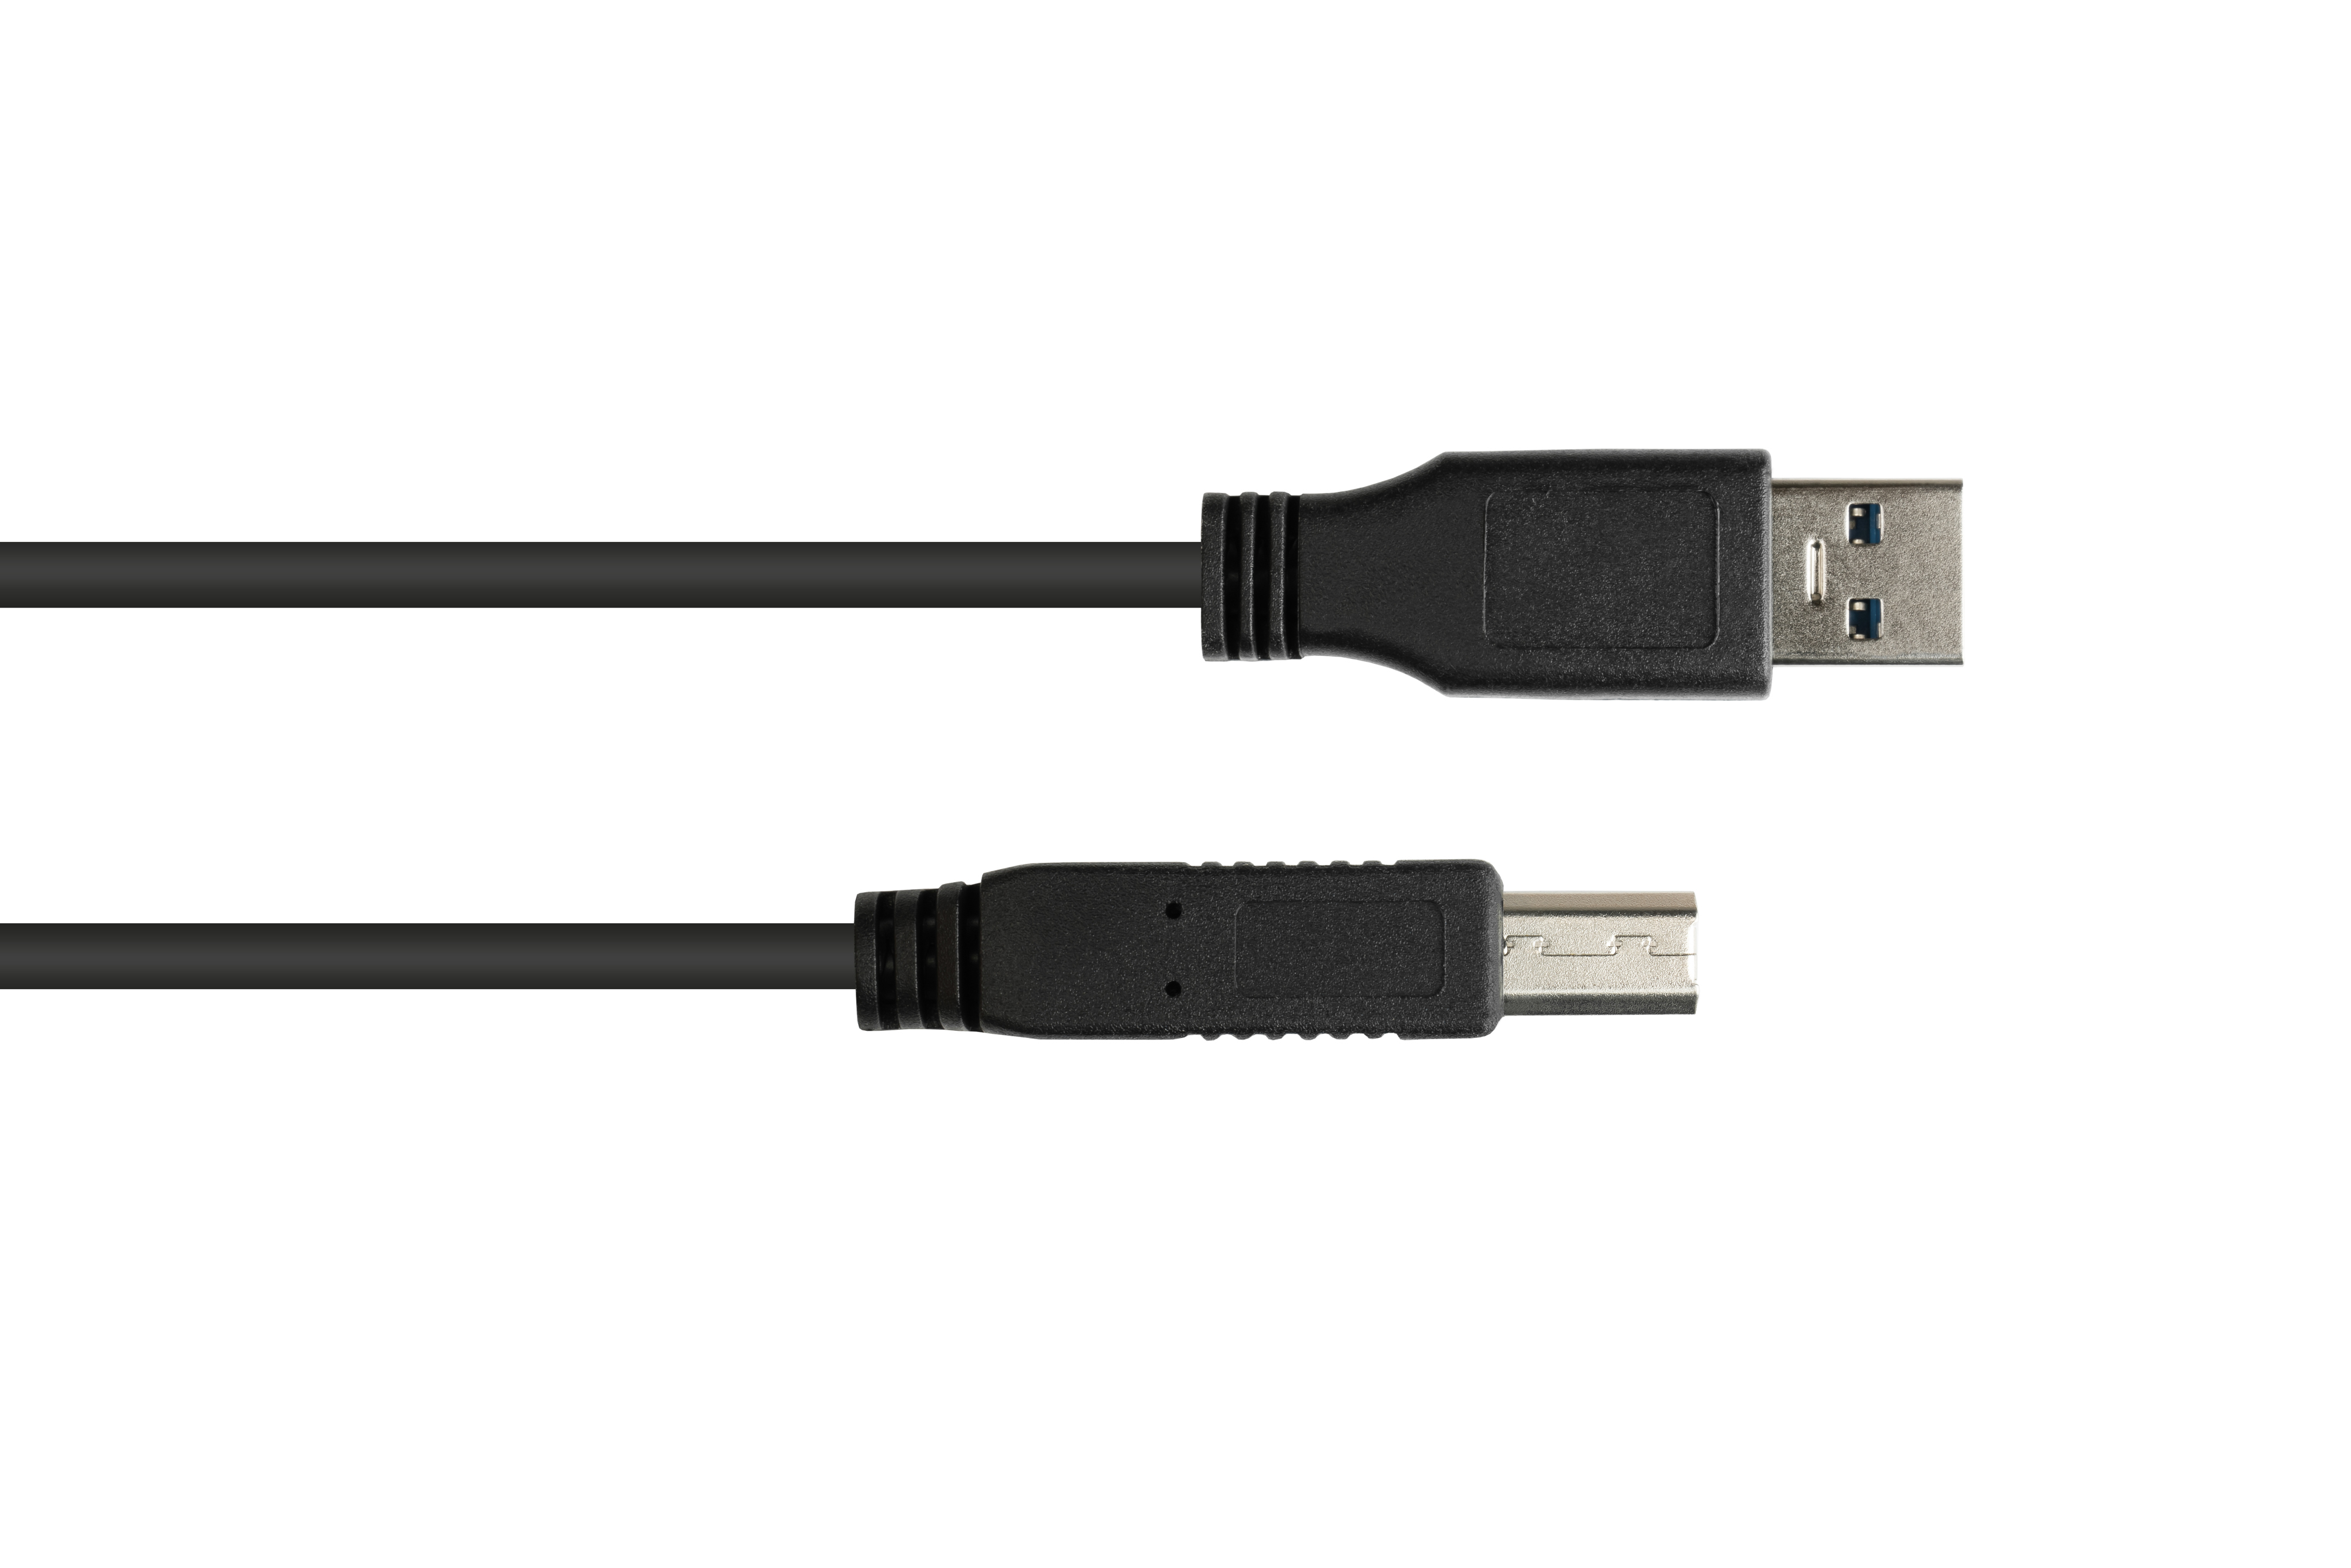 GOOD schwarz CONNECTIONS B, Stecker Stecker A an USB 3.0 Anschlusskabel